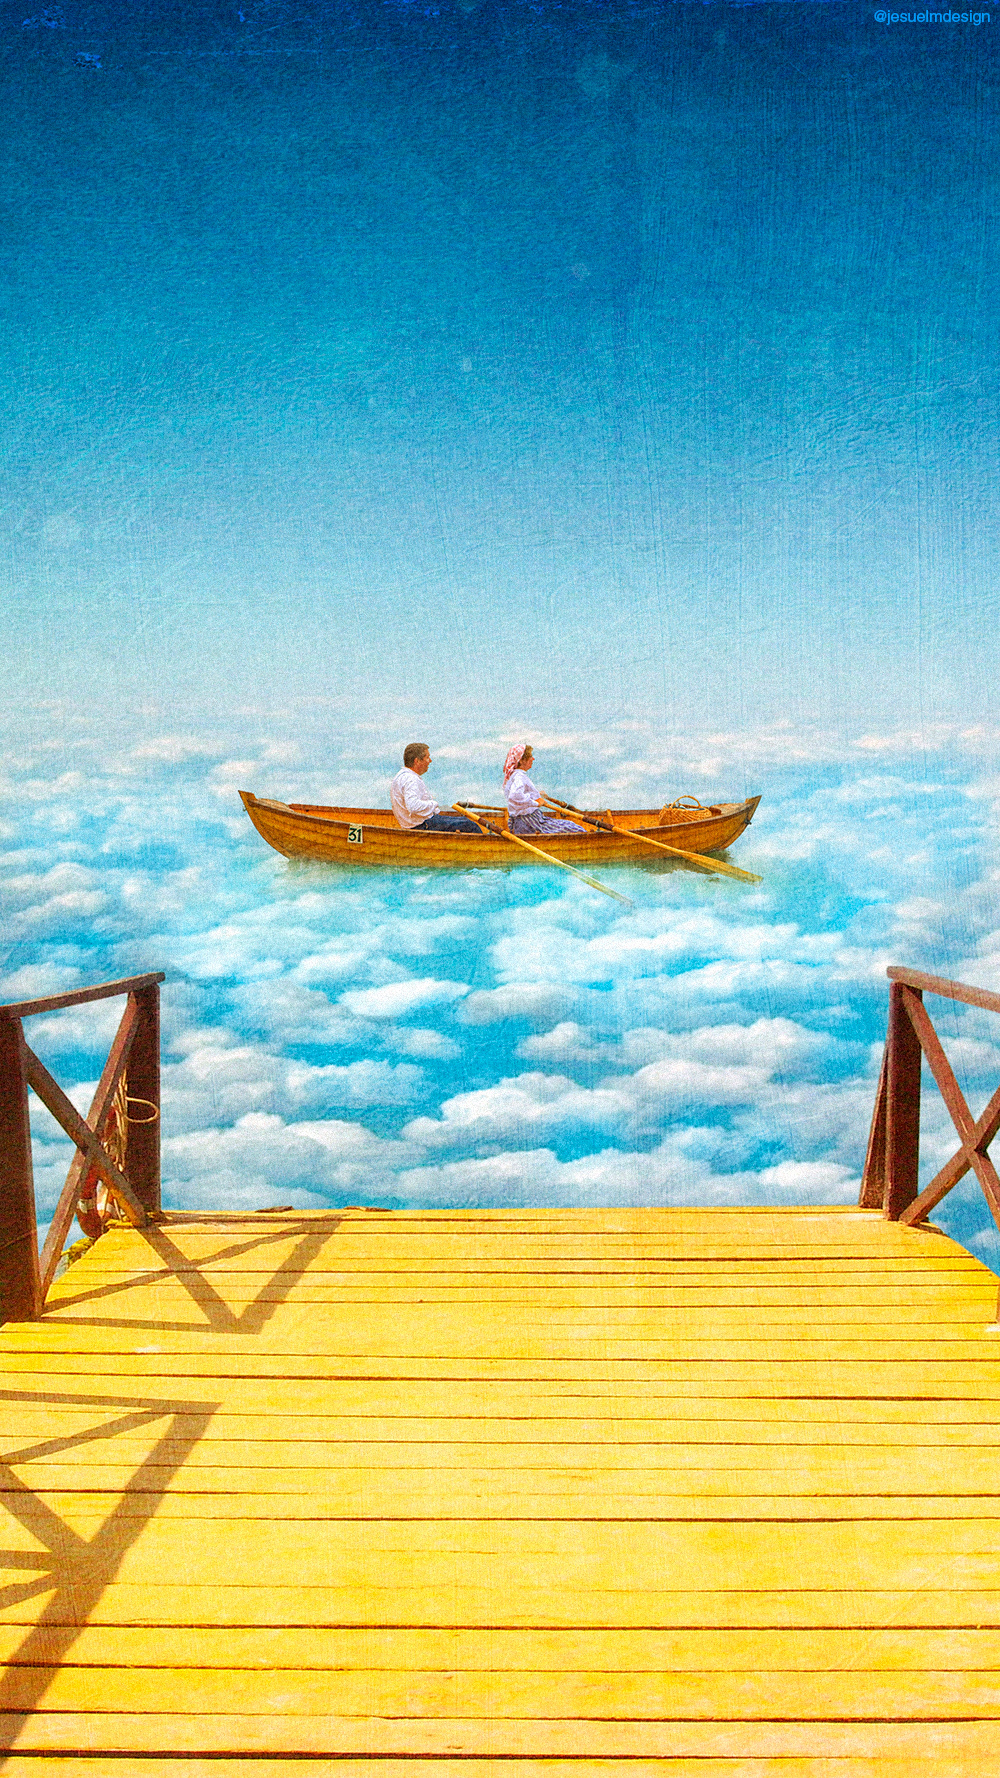 SKY surrealism fantasy wallpaper poster vintage collage Love